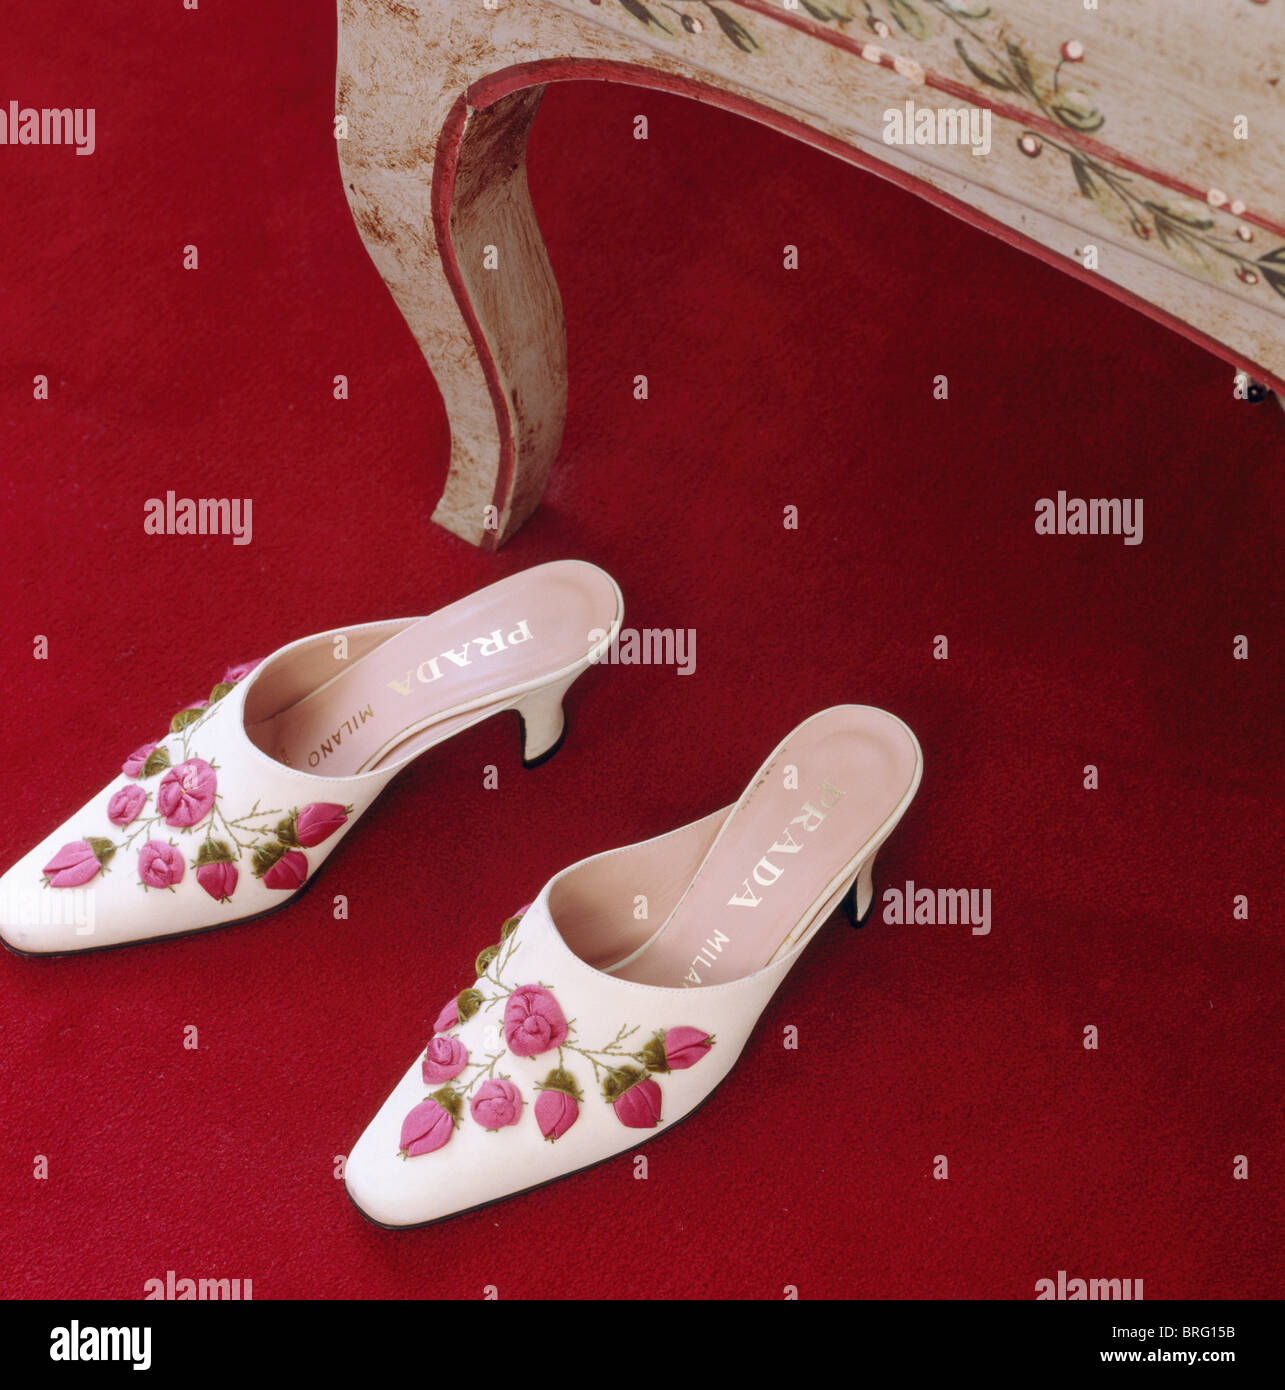 Prada shoes immagini e fotografie stock ad alta risoluzione - Alamy